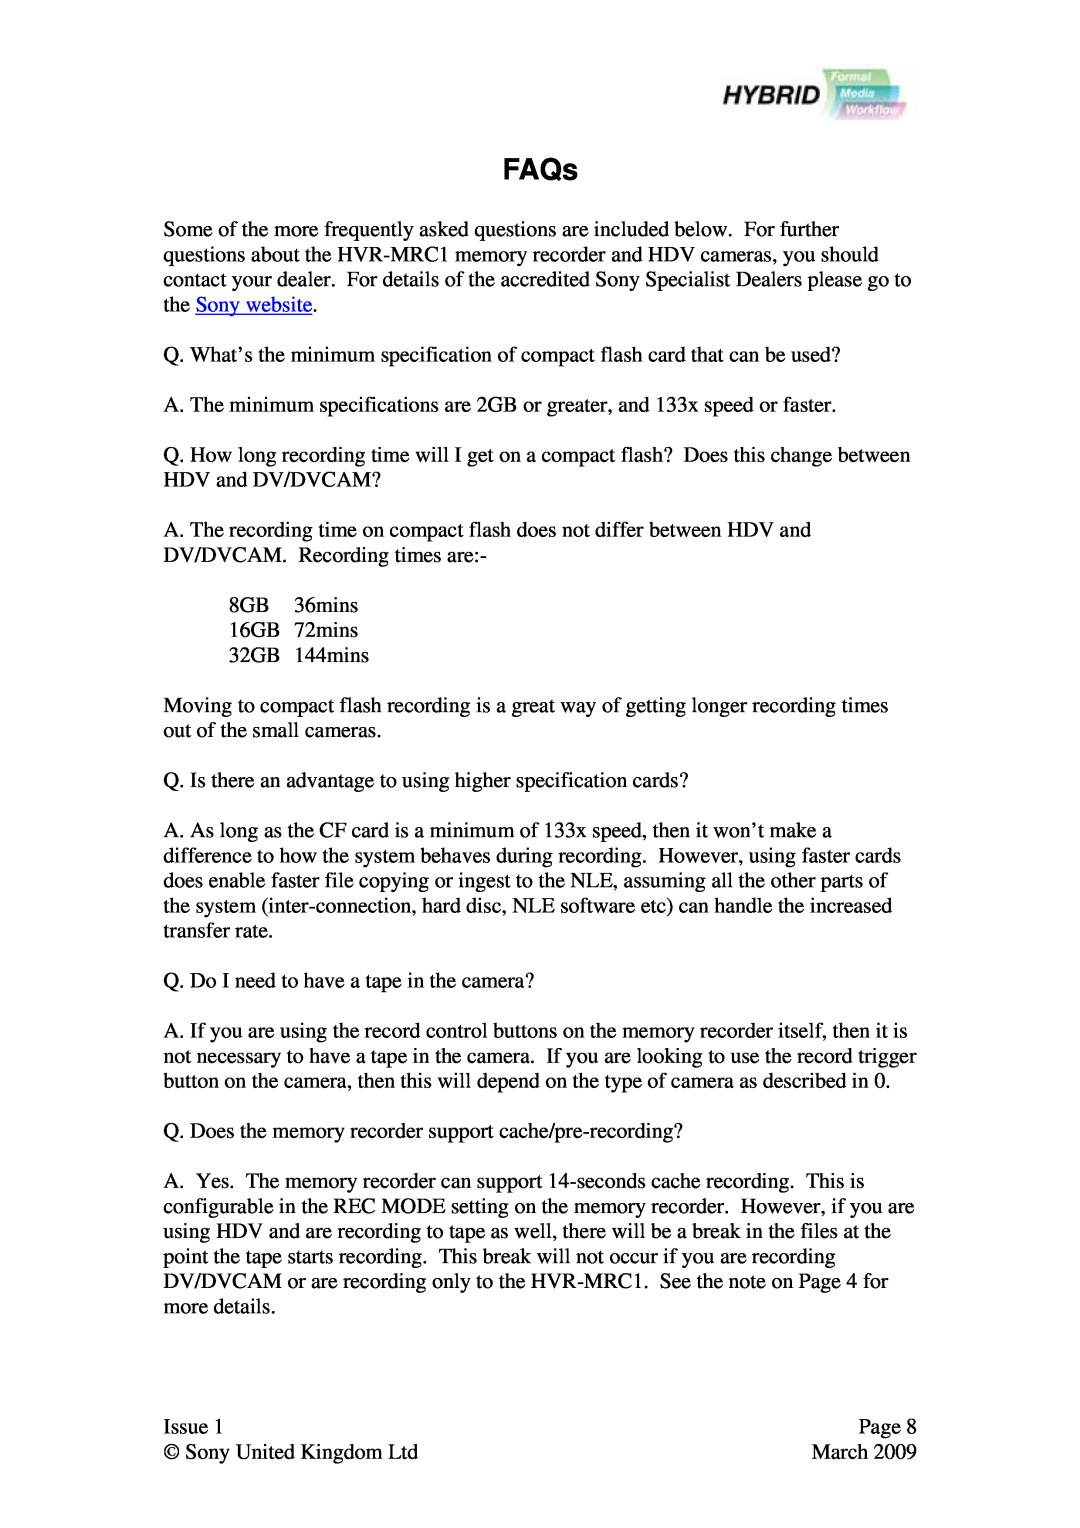 Sony Ericsson HVR-MRC1 user manual FAQs 